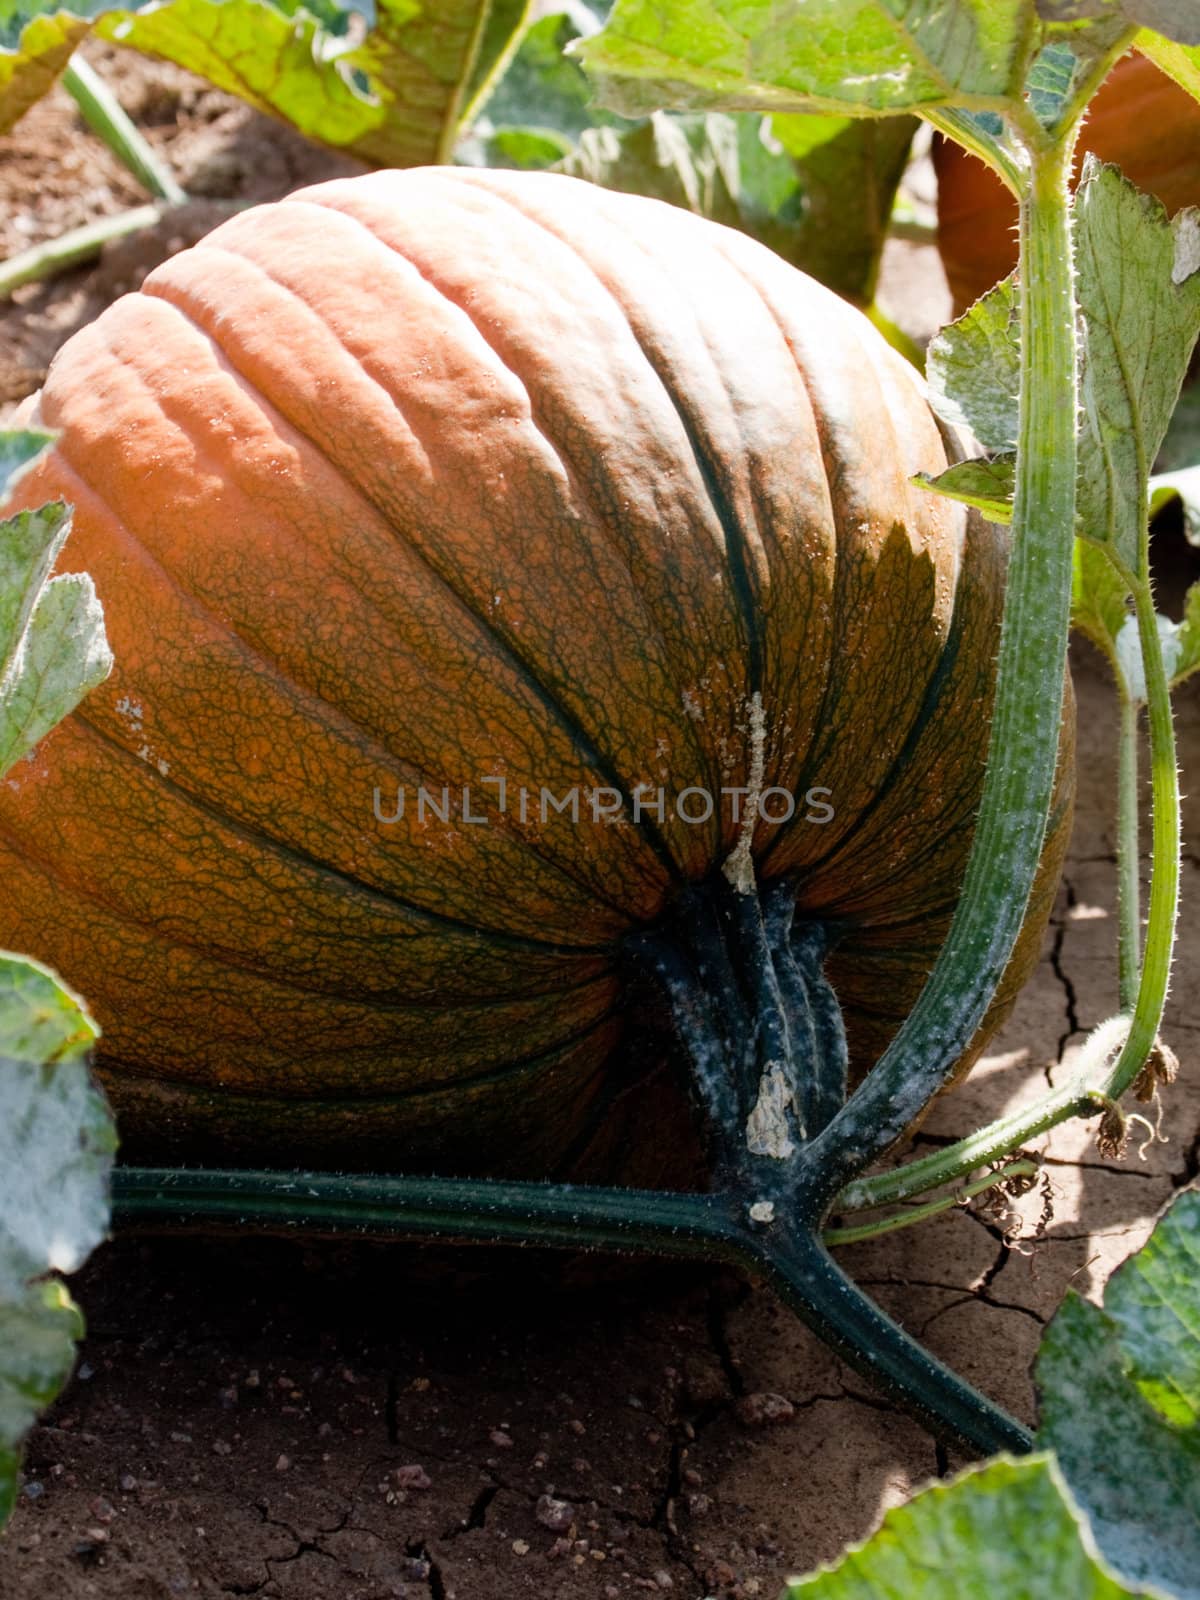 Organic Pumpkin growing in a field